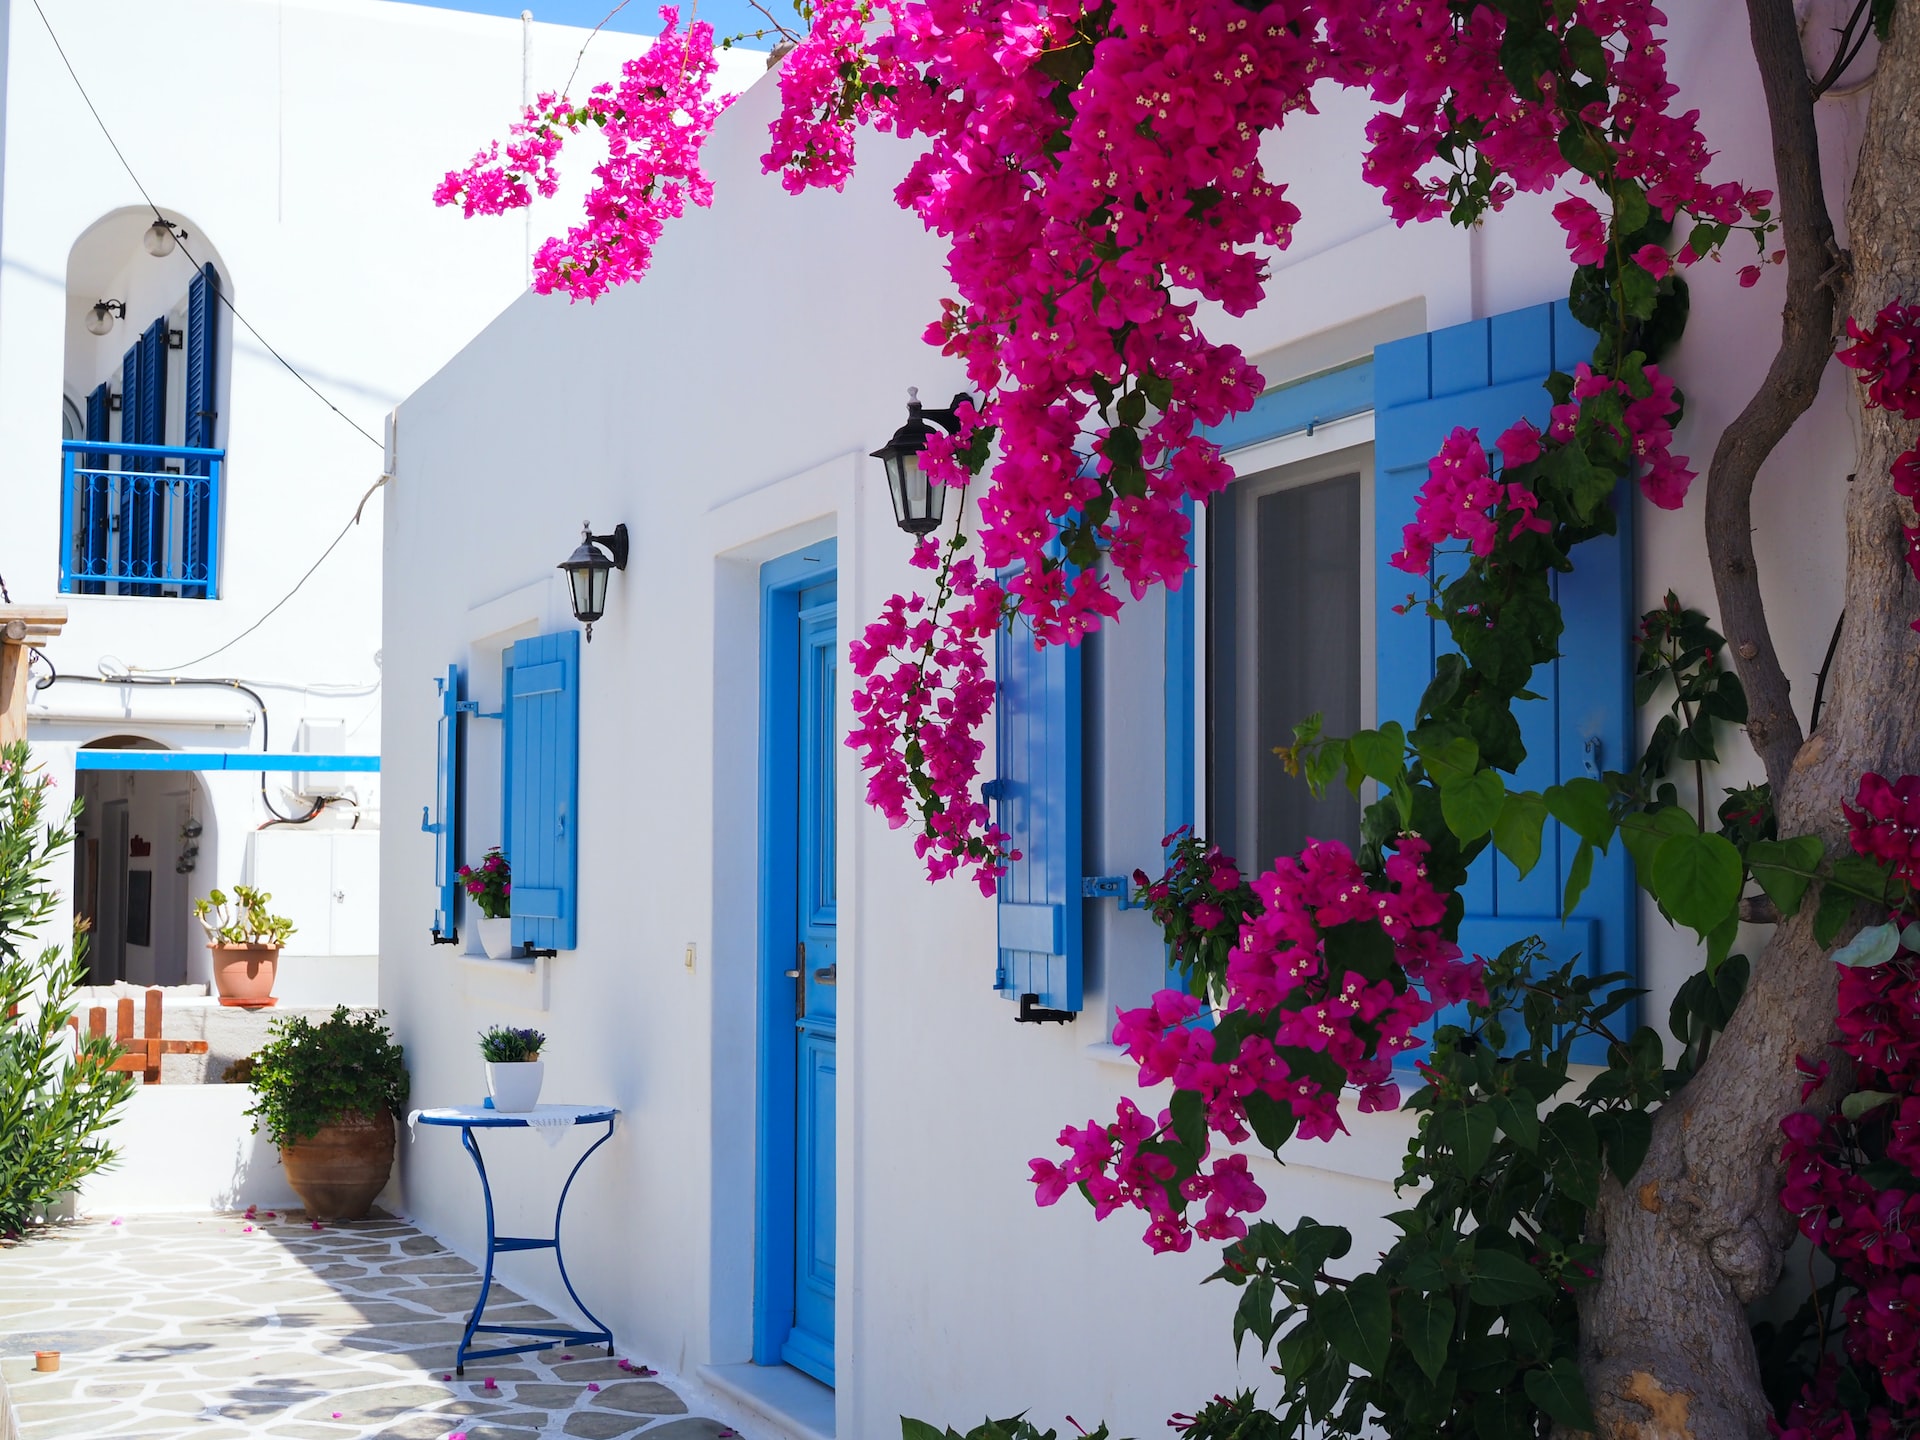 Scopri cosa visitare durante un tour nelle isole greche in 10 giorni